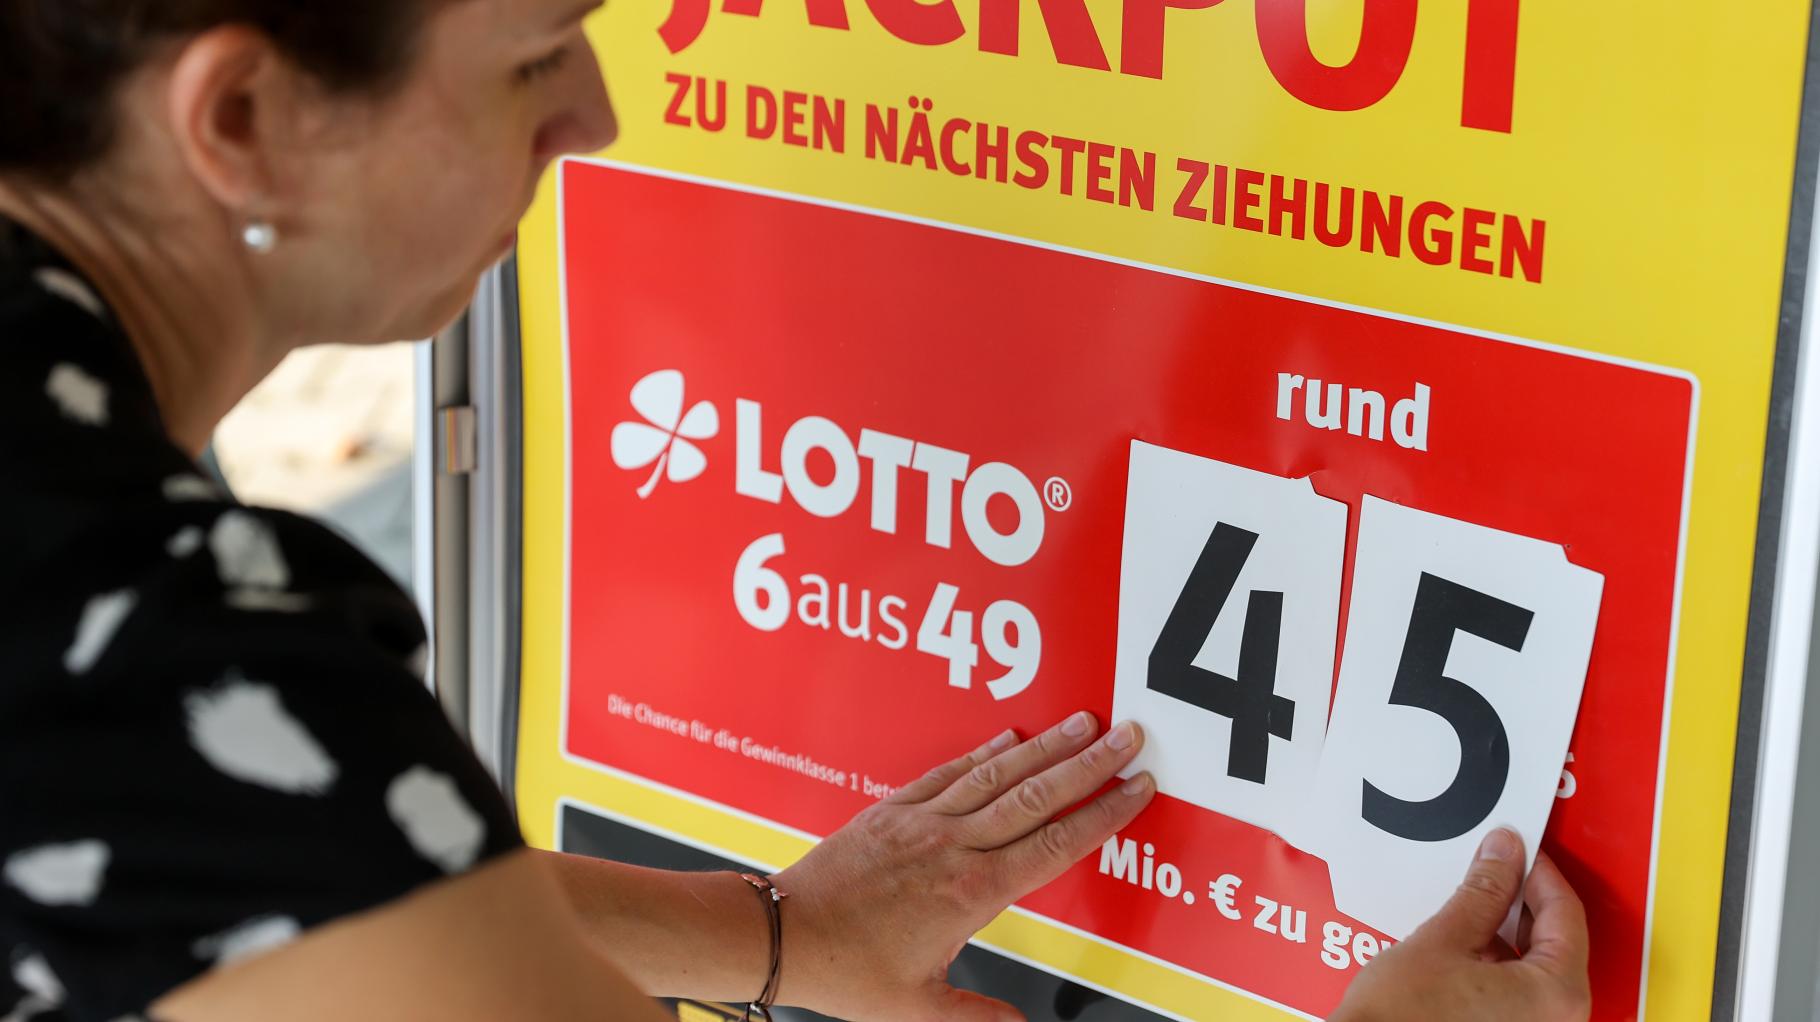 Lotto-Jackpot bei 6aus49 erreicht Obergrenze von 45 Millionen Euro